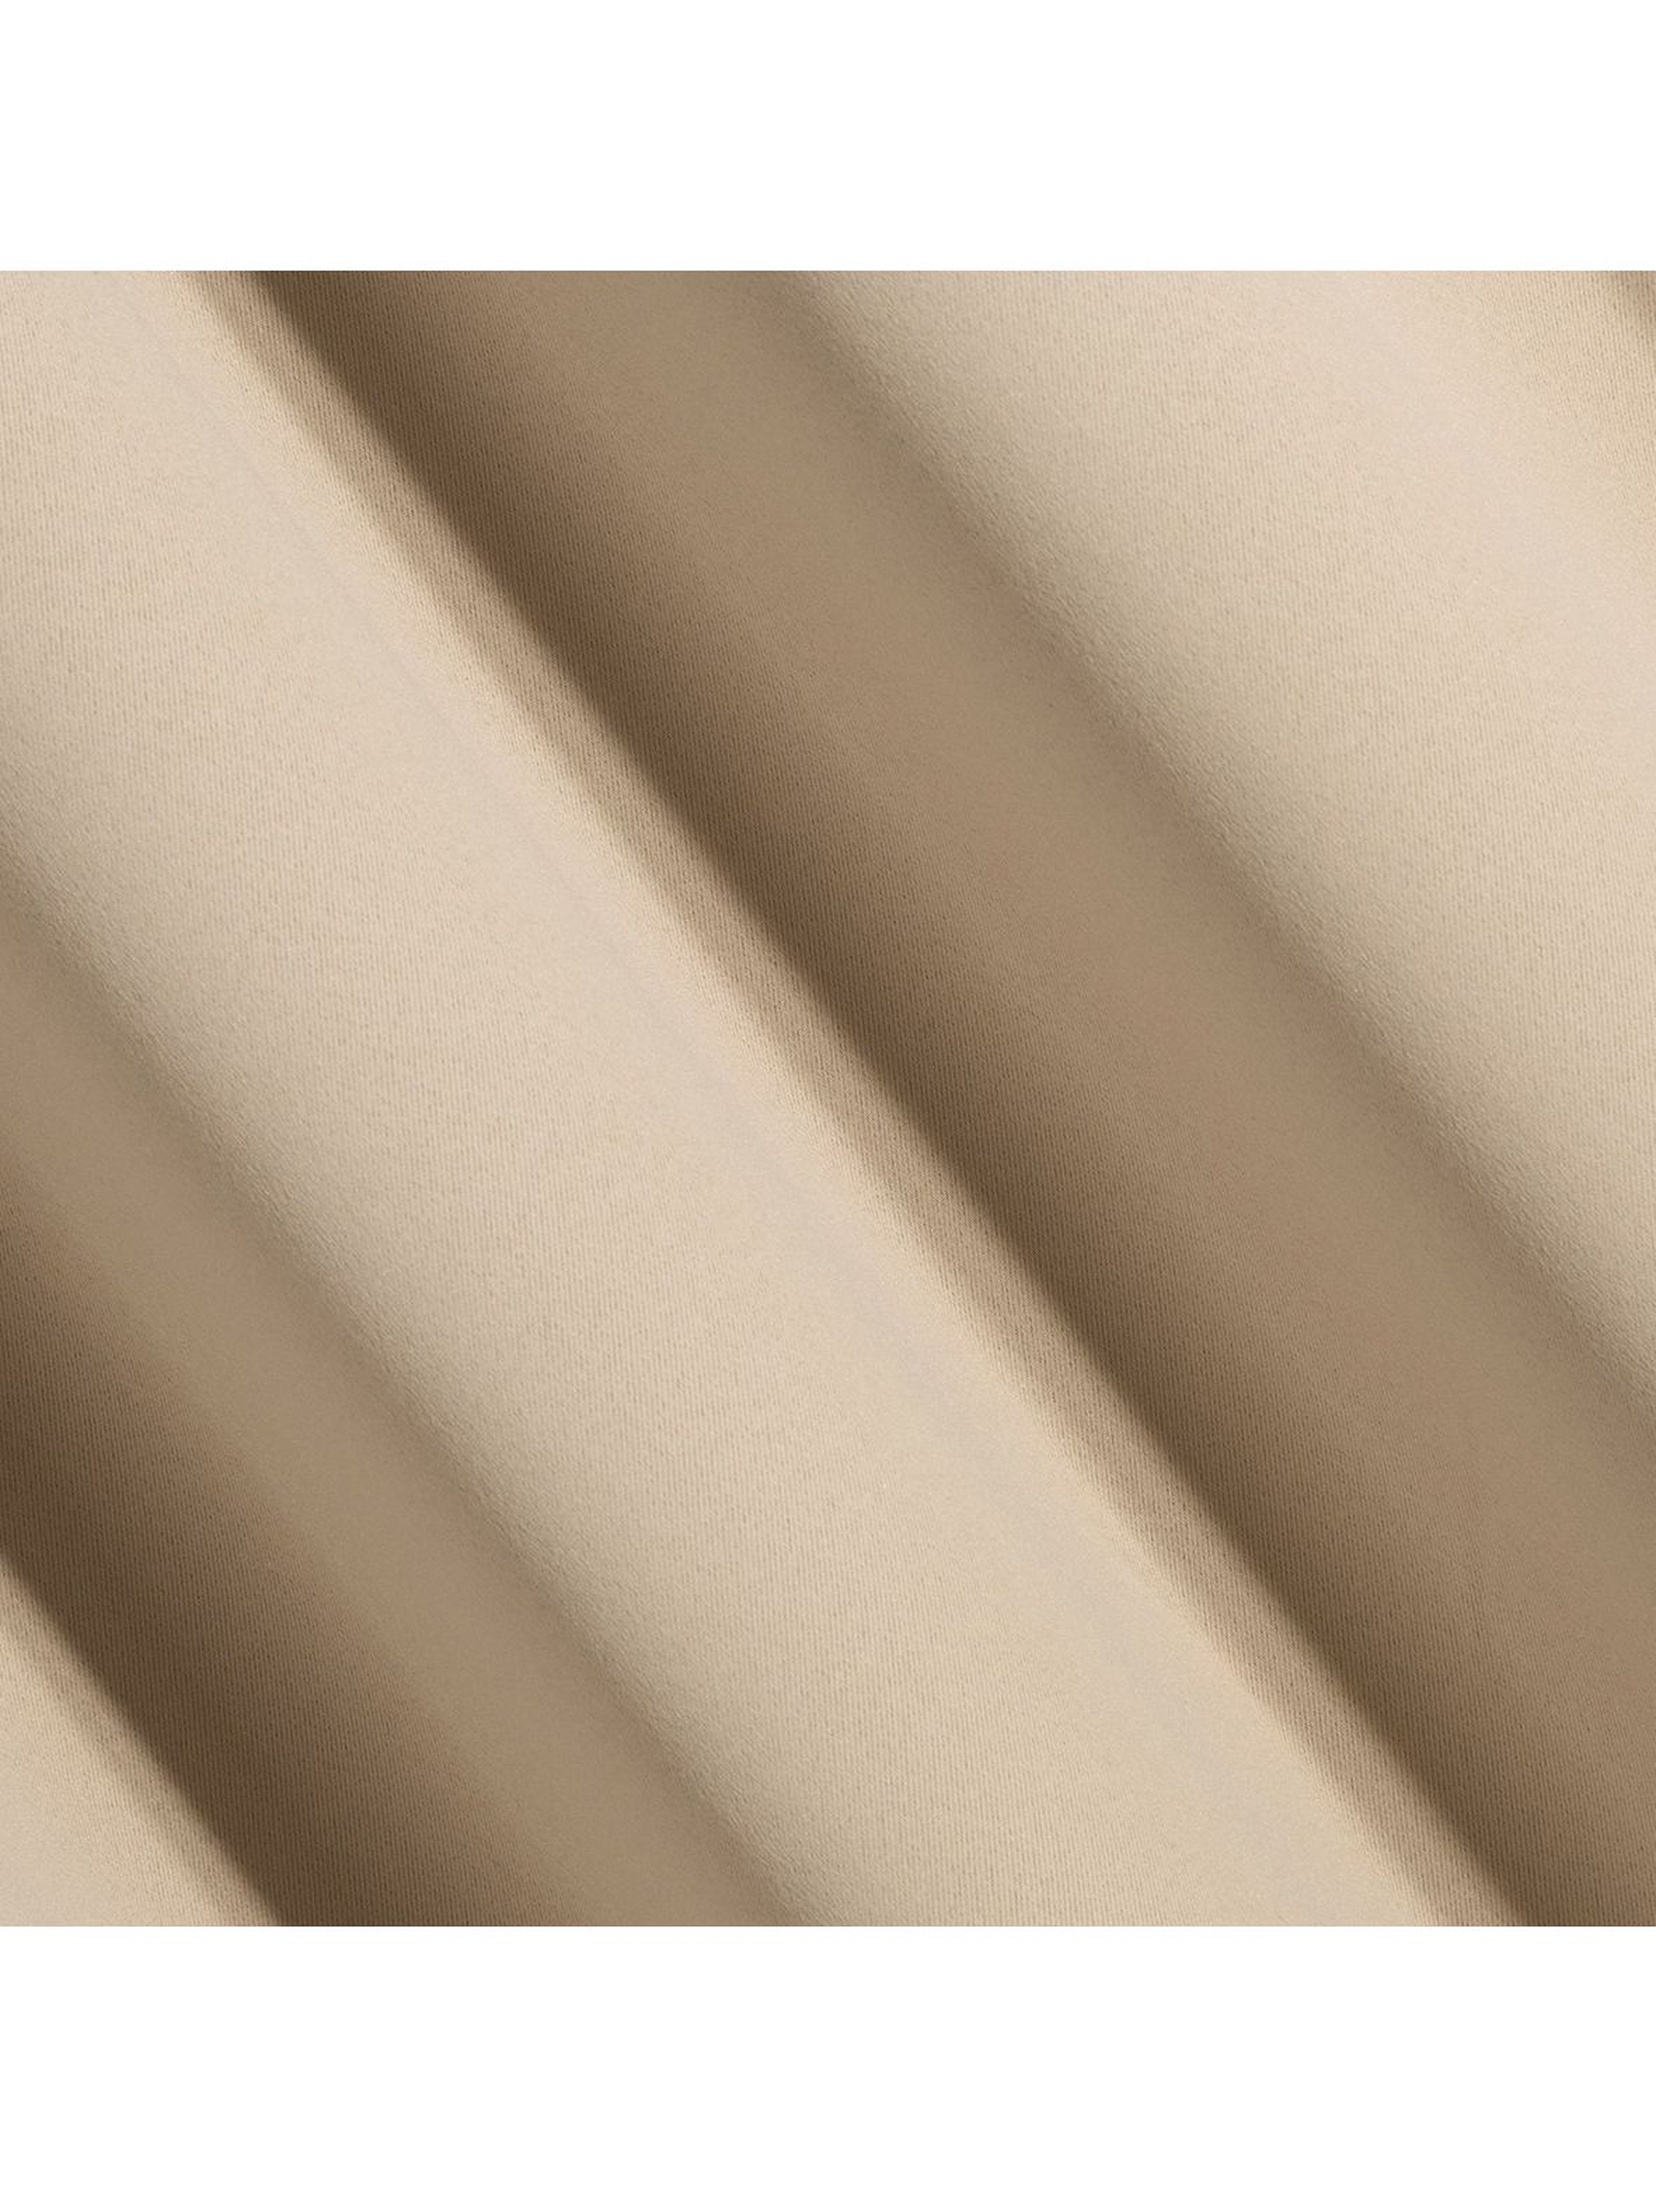 Zasłona zaciemniająca jednokolorowa - beżowa - 135x250cm